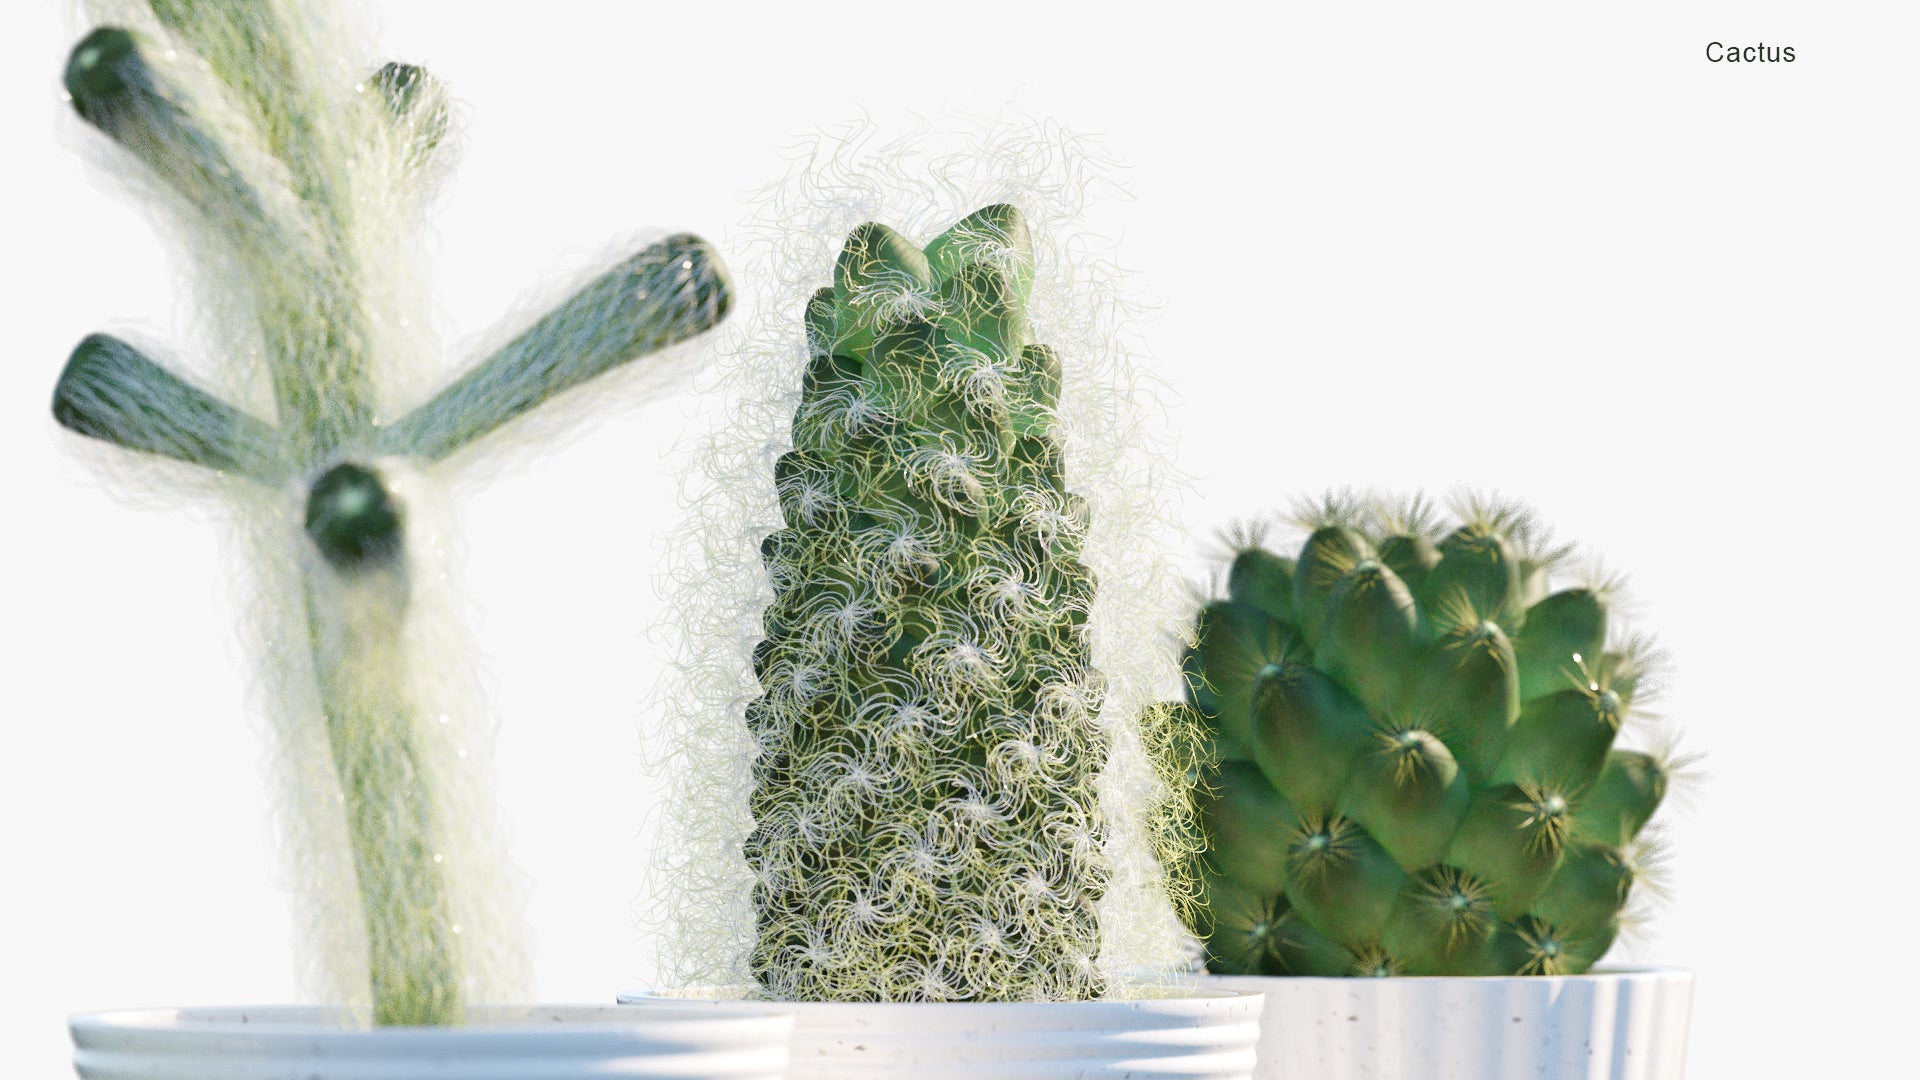 Cactus - Cacti (3D Model)